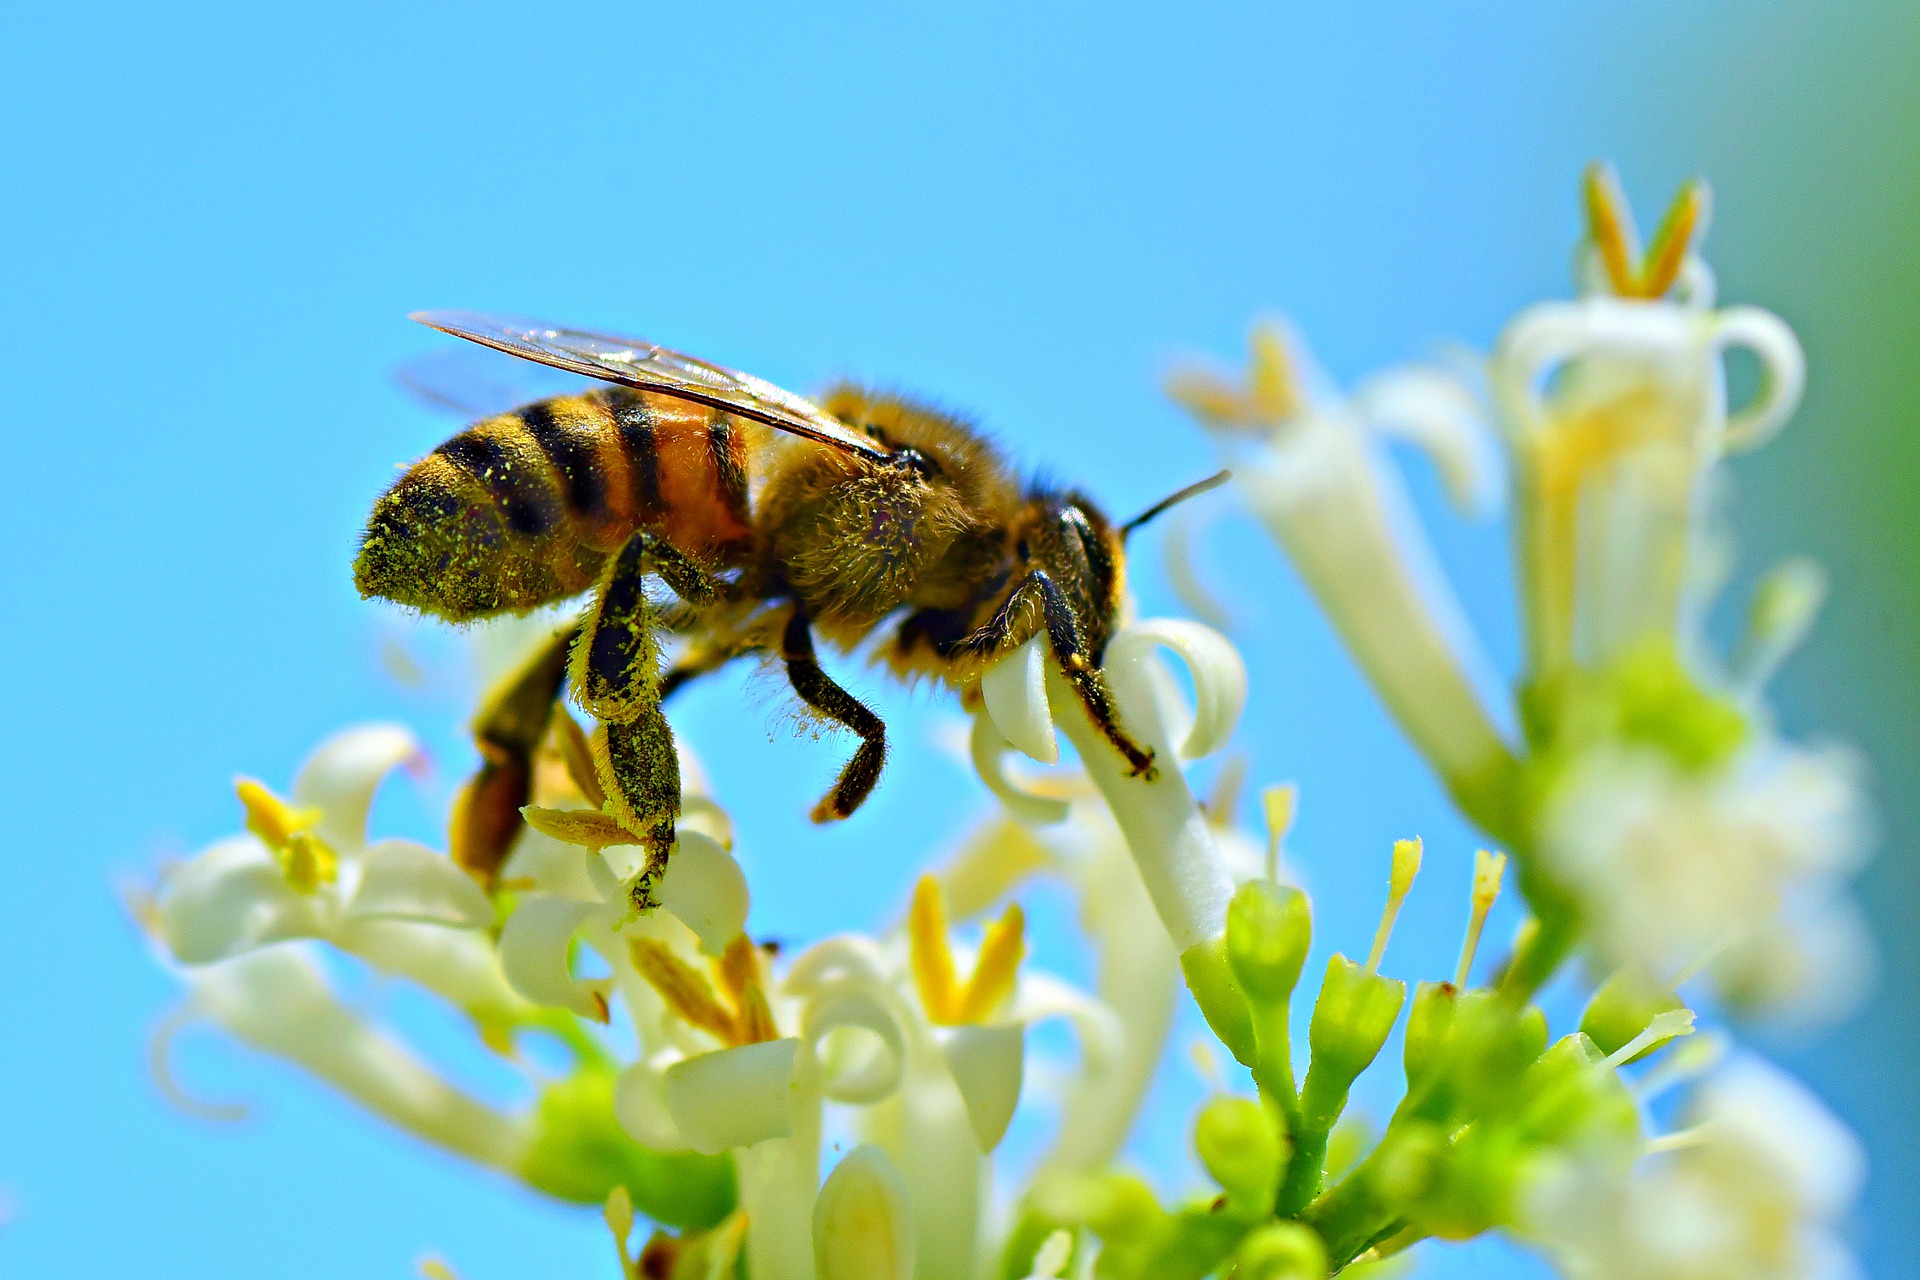 Eine Honigbiene voller Blütenstaub, die gerade an kleinen weissen Blüten herumfliegt